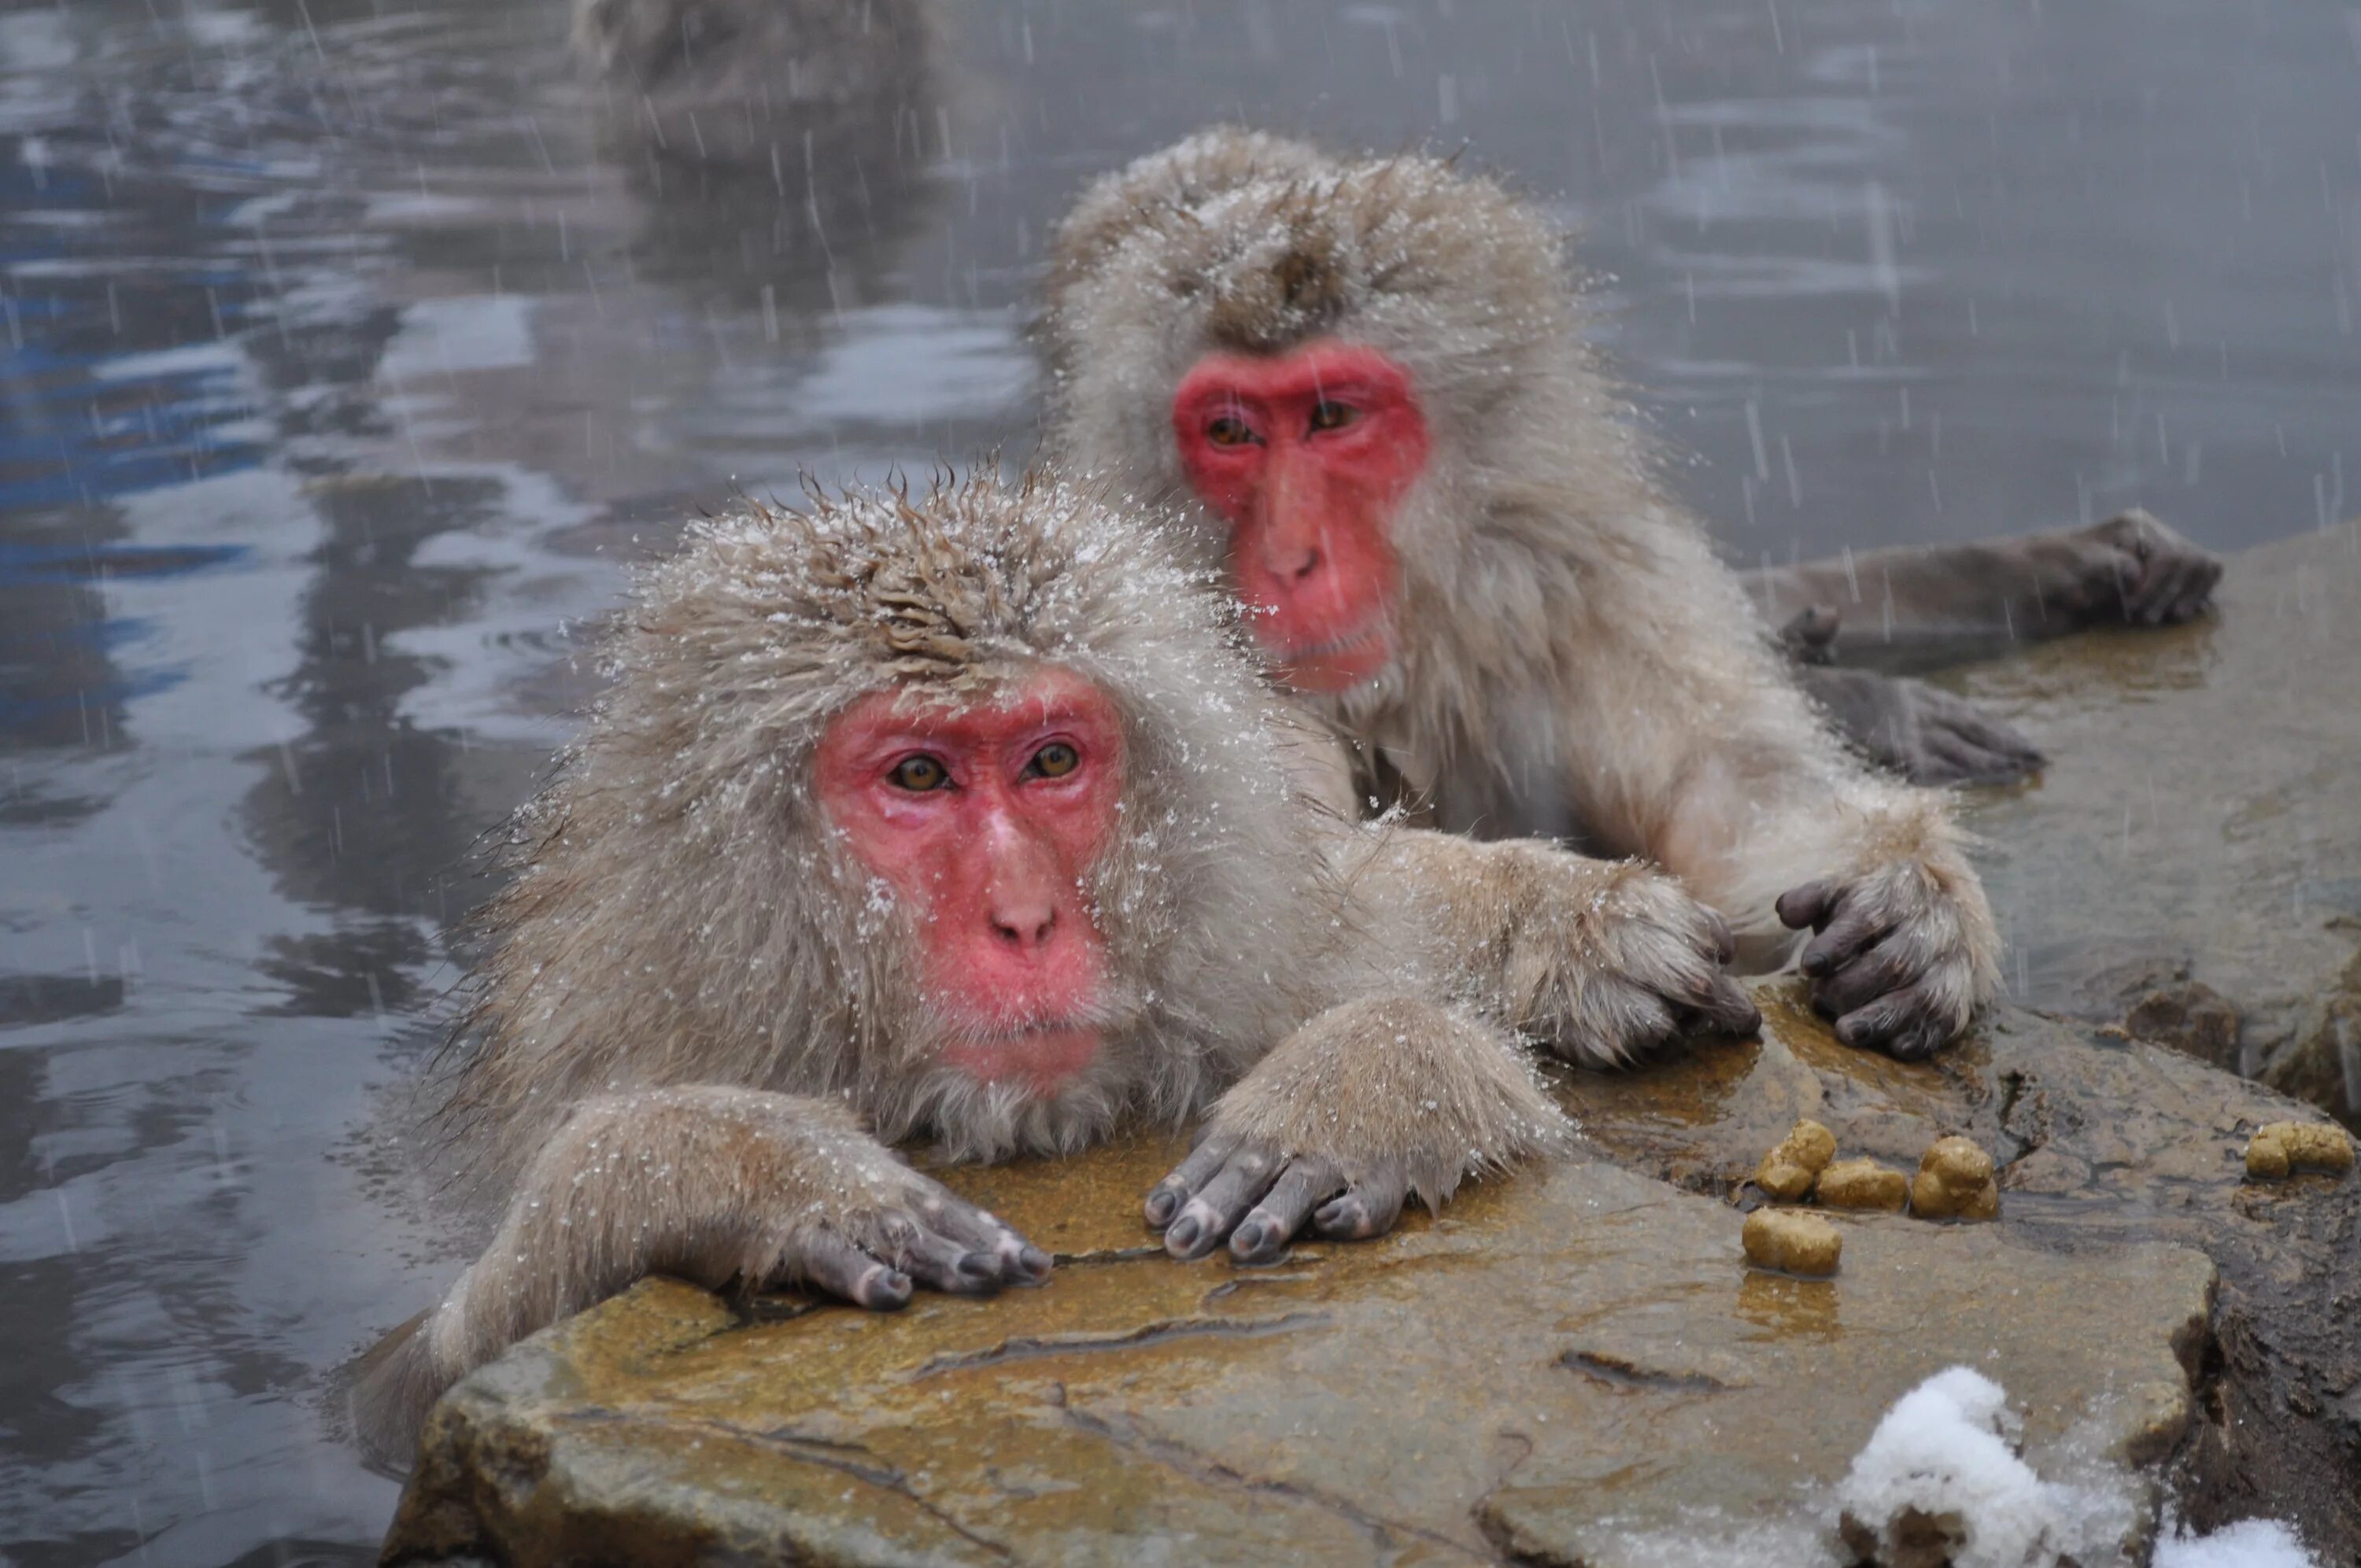 Обезьяны в Японии в горячих источниках. Парк обезьян Дзигокудани. Японские макаки в горячих источниках зимой. Снежные обезьяны в горячих источниках Нагано. Обезьяна купается в теплой воде